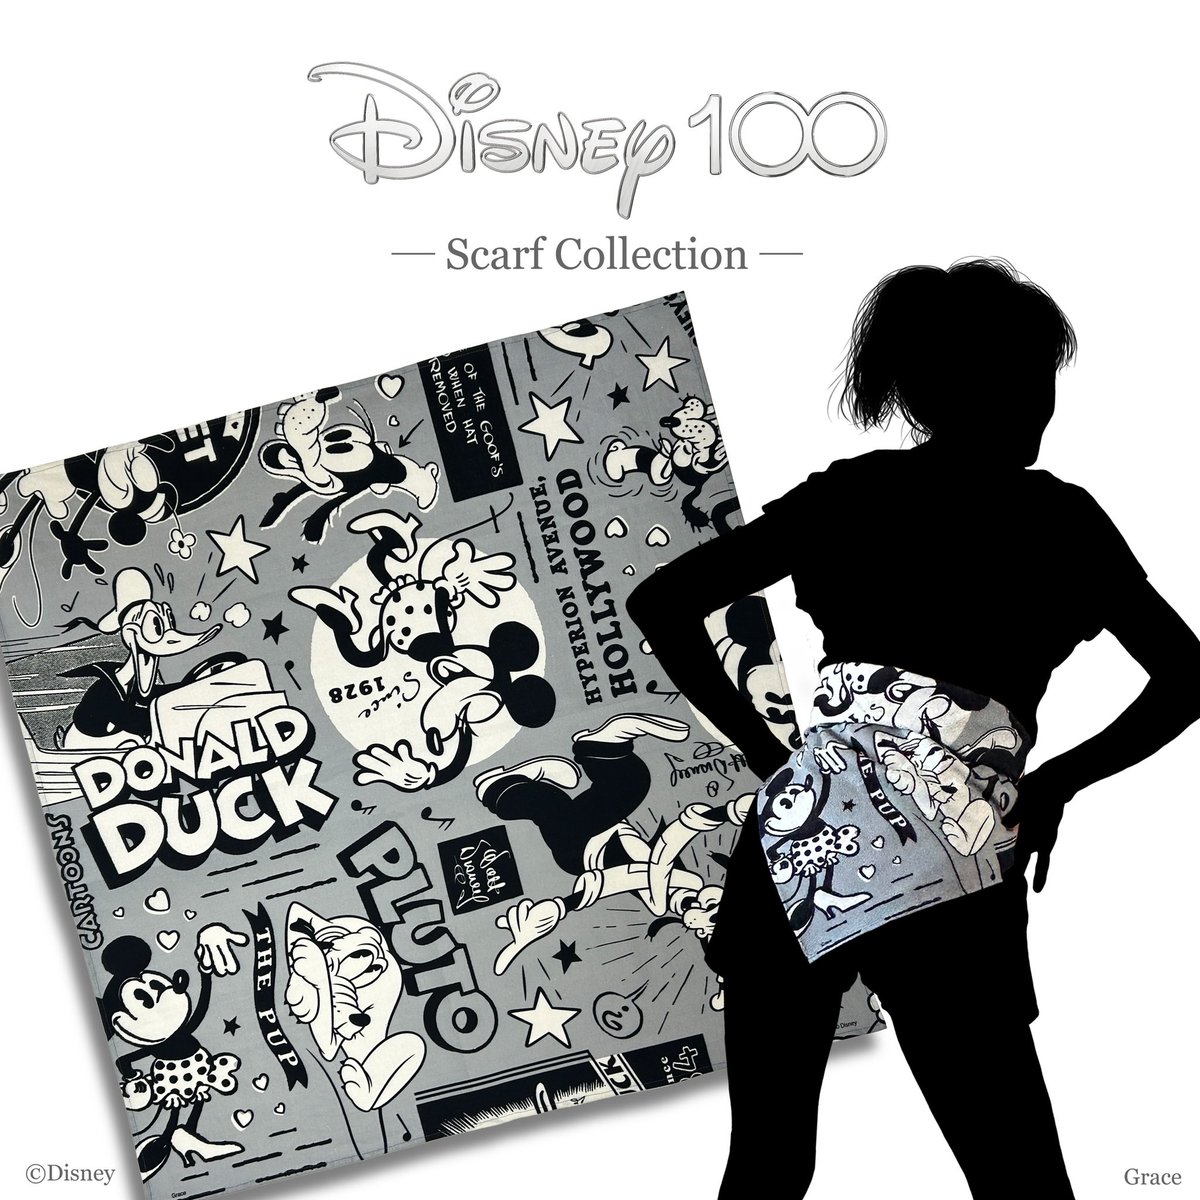 【Disney100 Scarf】

Disney100限定アート使用‼️
100周年の今だけしかゲットできないとってもレアなデザイン✨

日常にコーデしやすいラインナップでまとめました🎵

これからもずっとDisneyファッションを楽しみましょう✨

#Disney #ディズニー #ディズニー100 #Disney100 